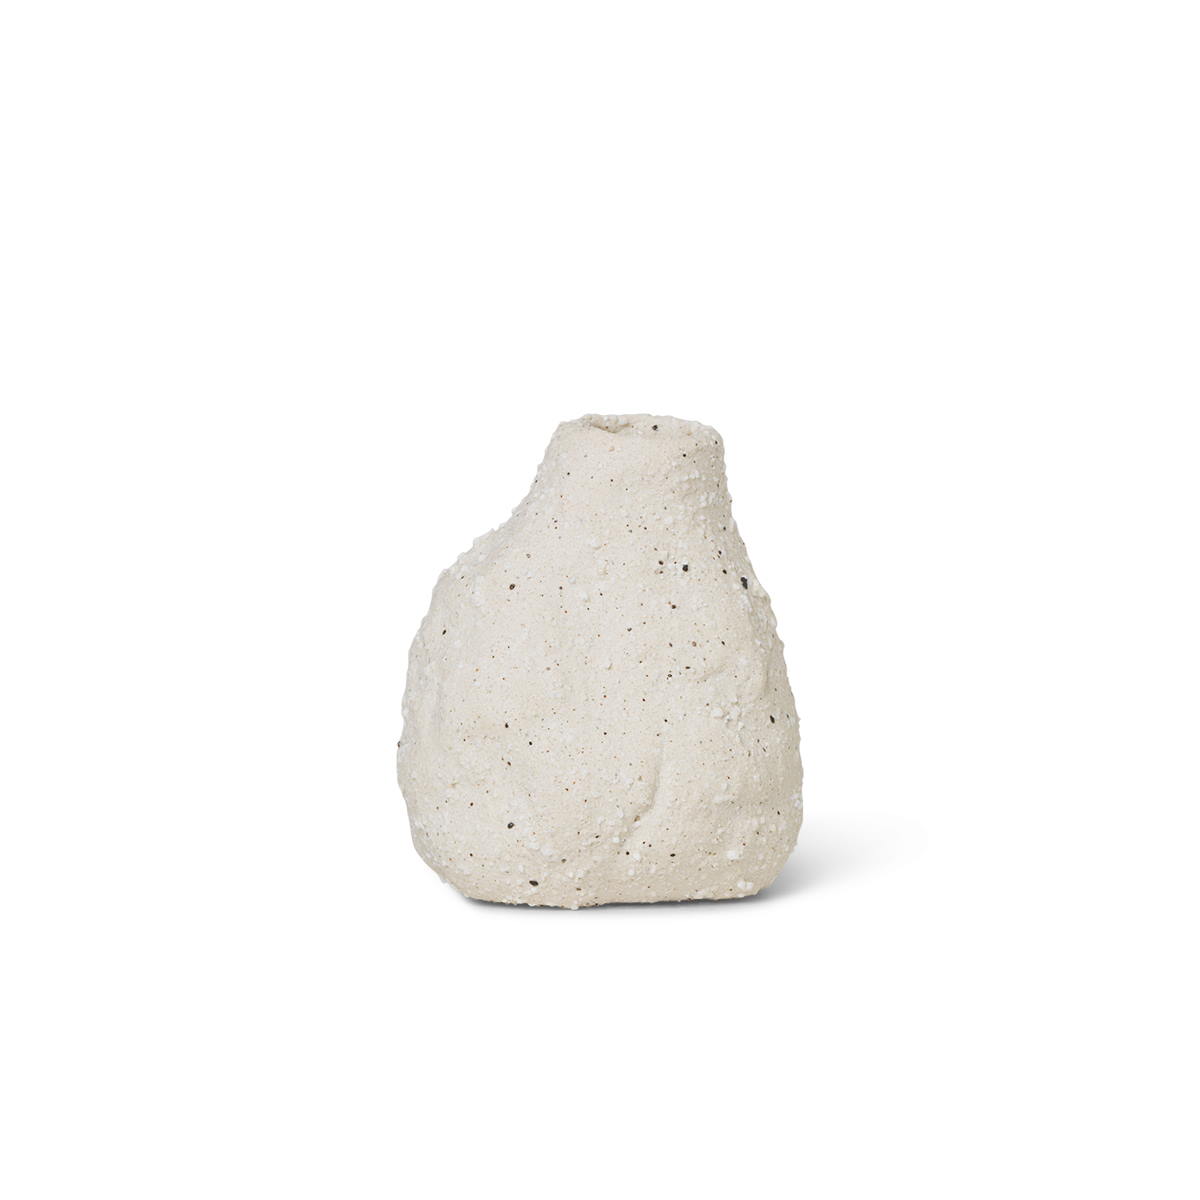 Vulca Mini Vas Off-white stone Ferm Living